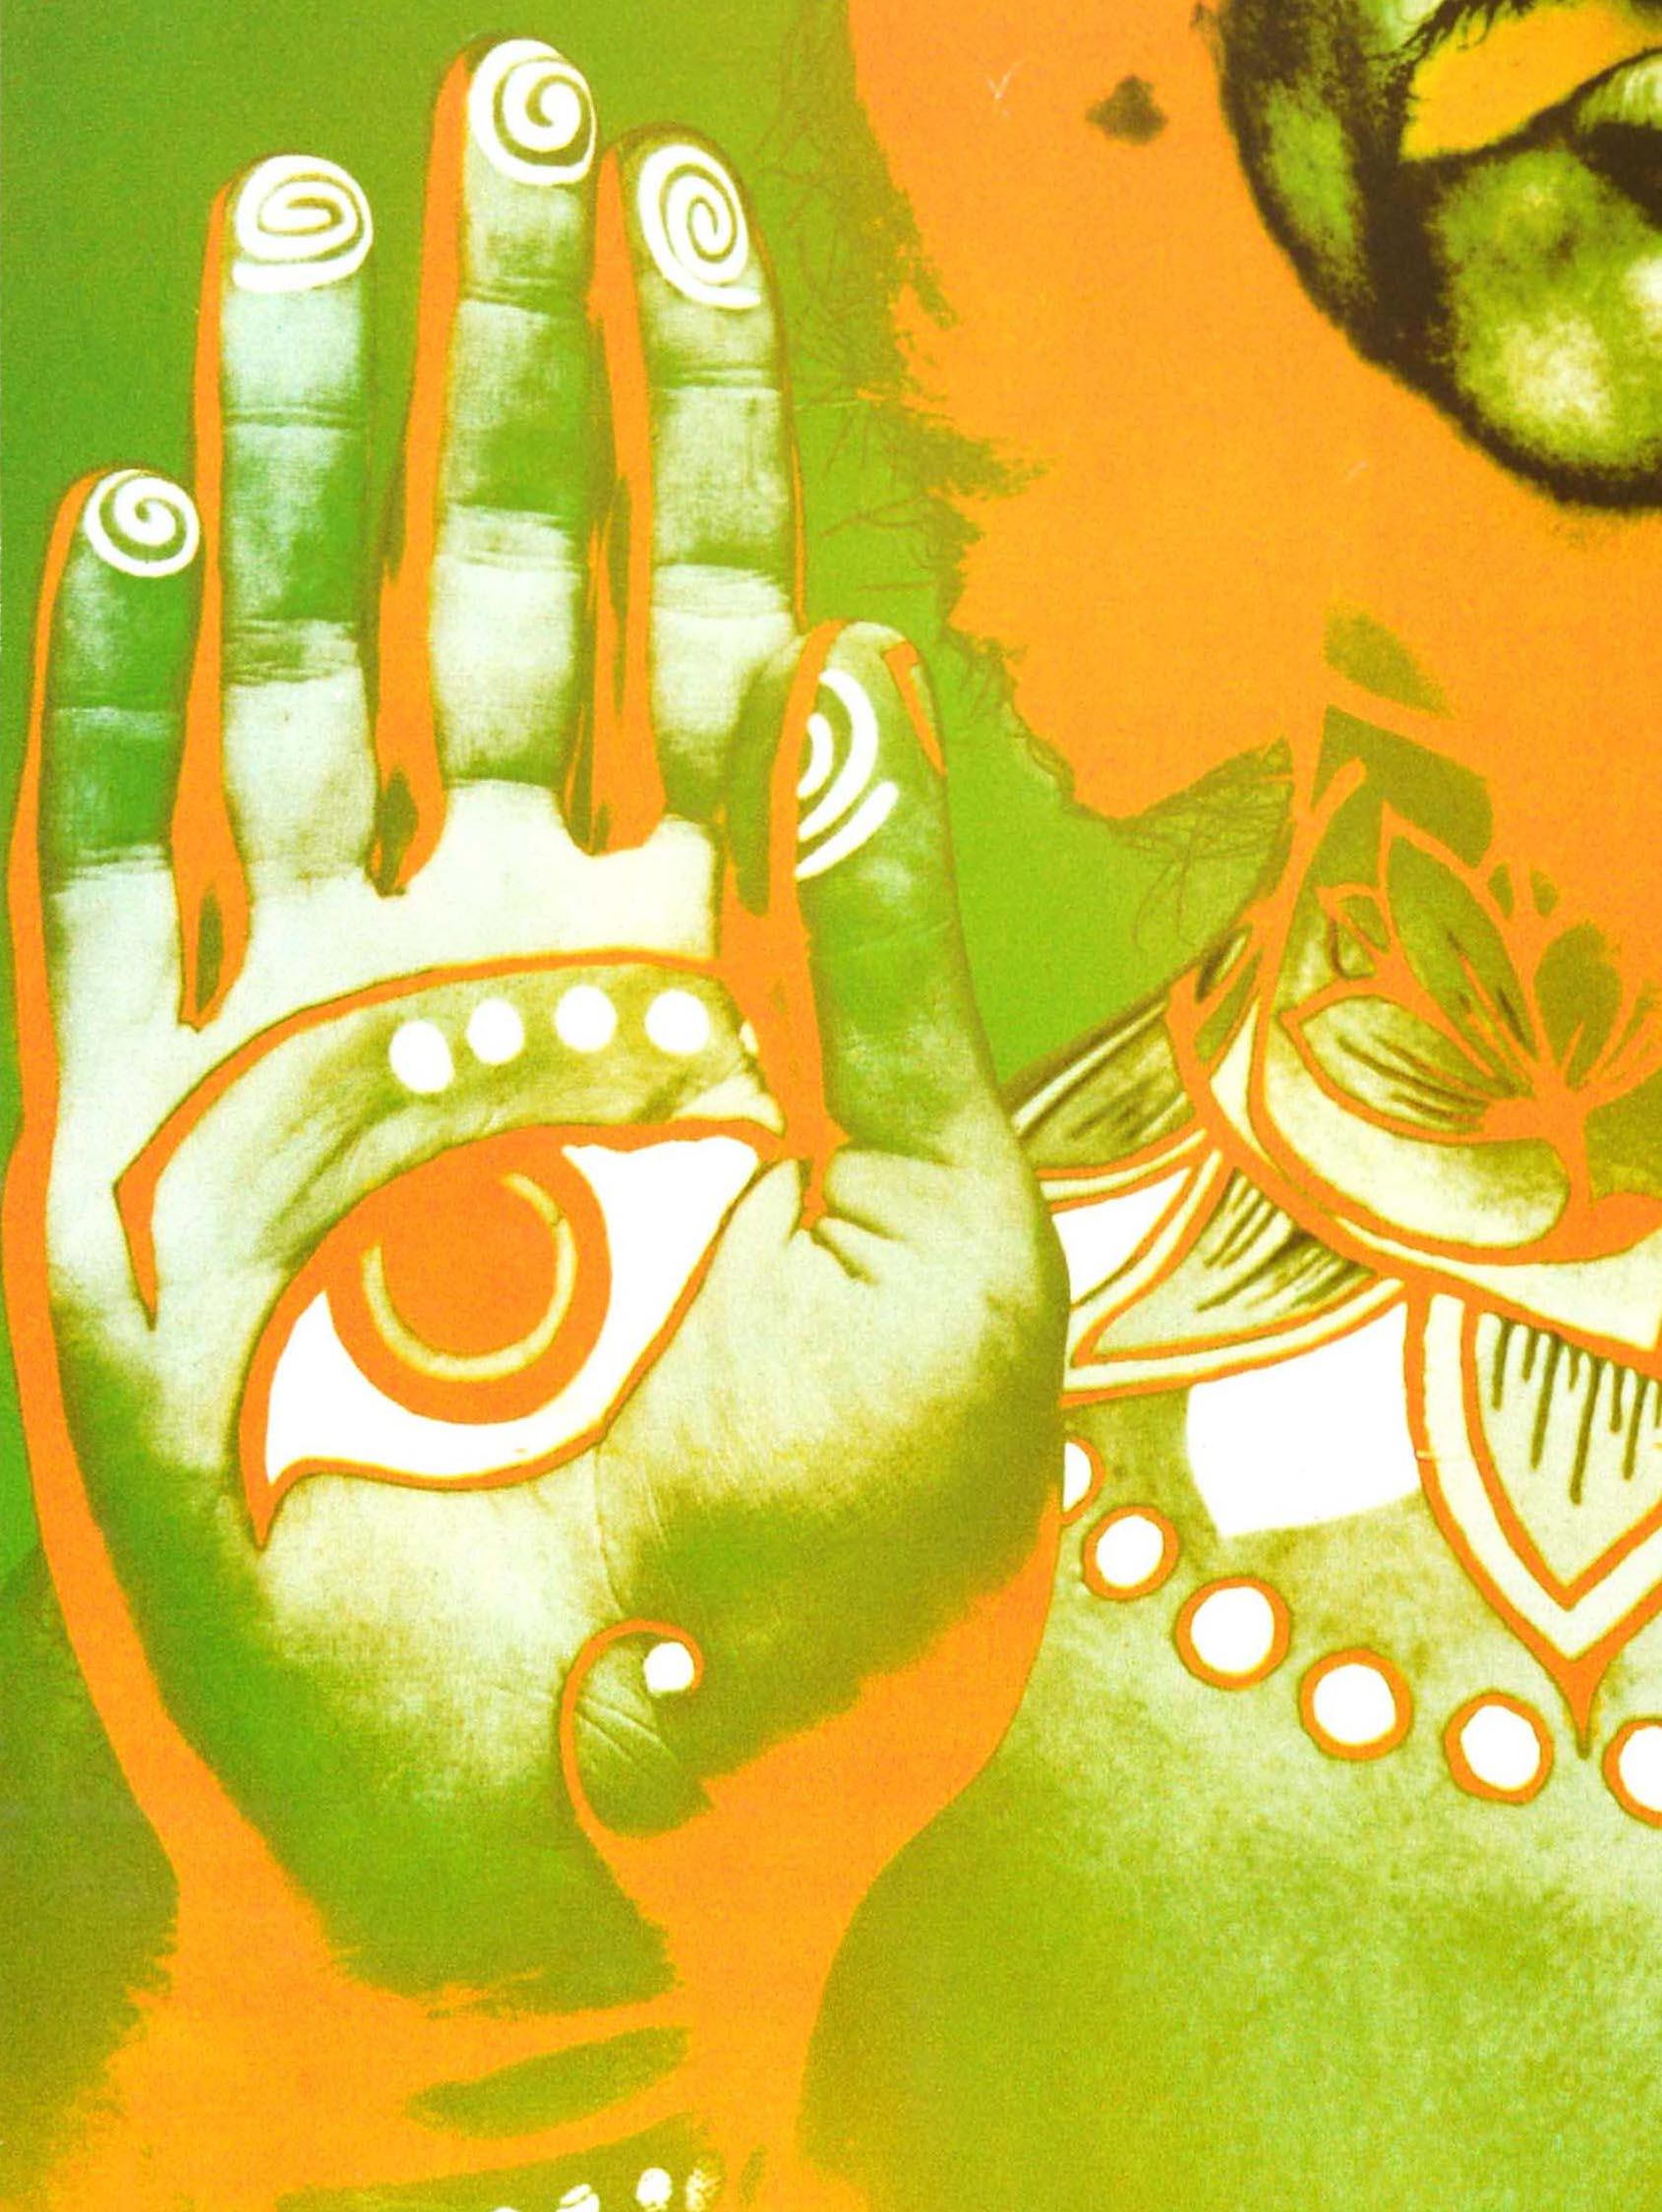 Affiche publicitaire originale de musique vintage présentant une photo colorée et psychédélique utilisant une nouvelle technique de solarisation du photographe américain Richard Avedon (1923-2004) du musicien et auteur-compositeur-interprète des